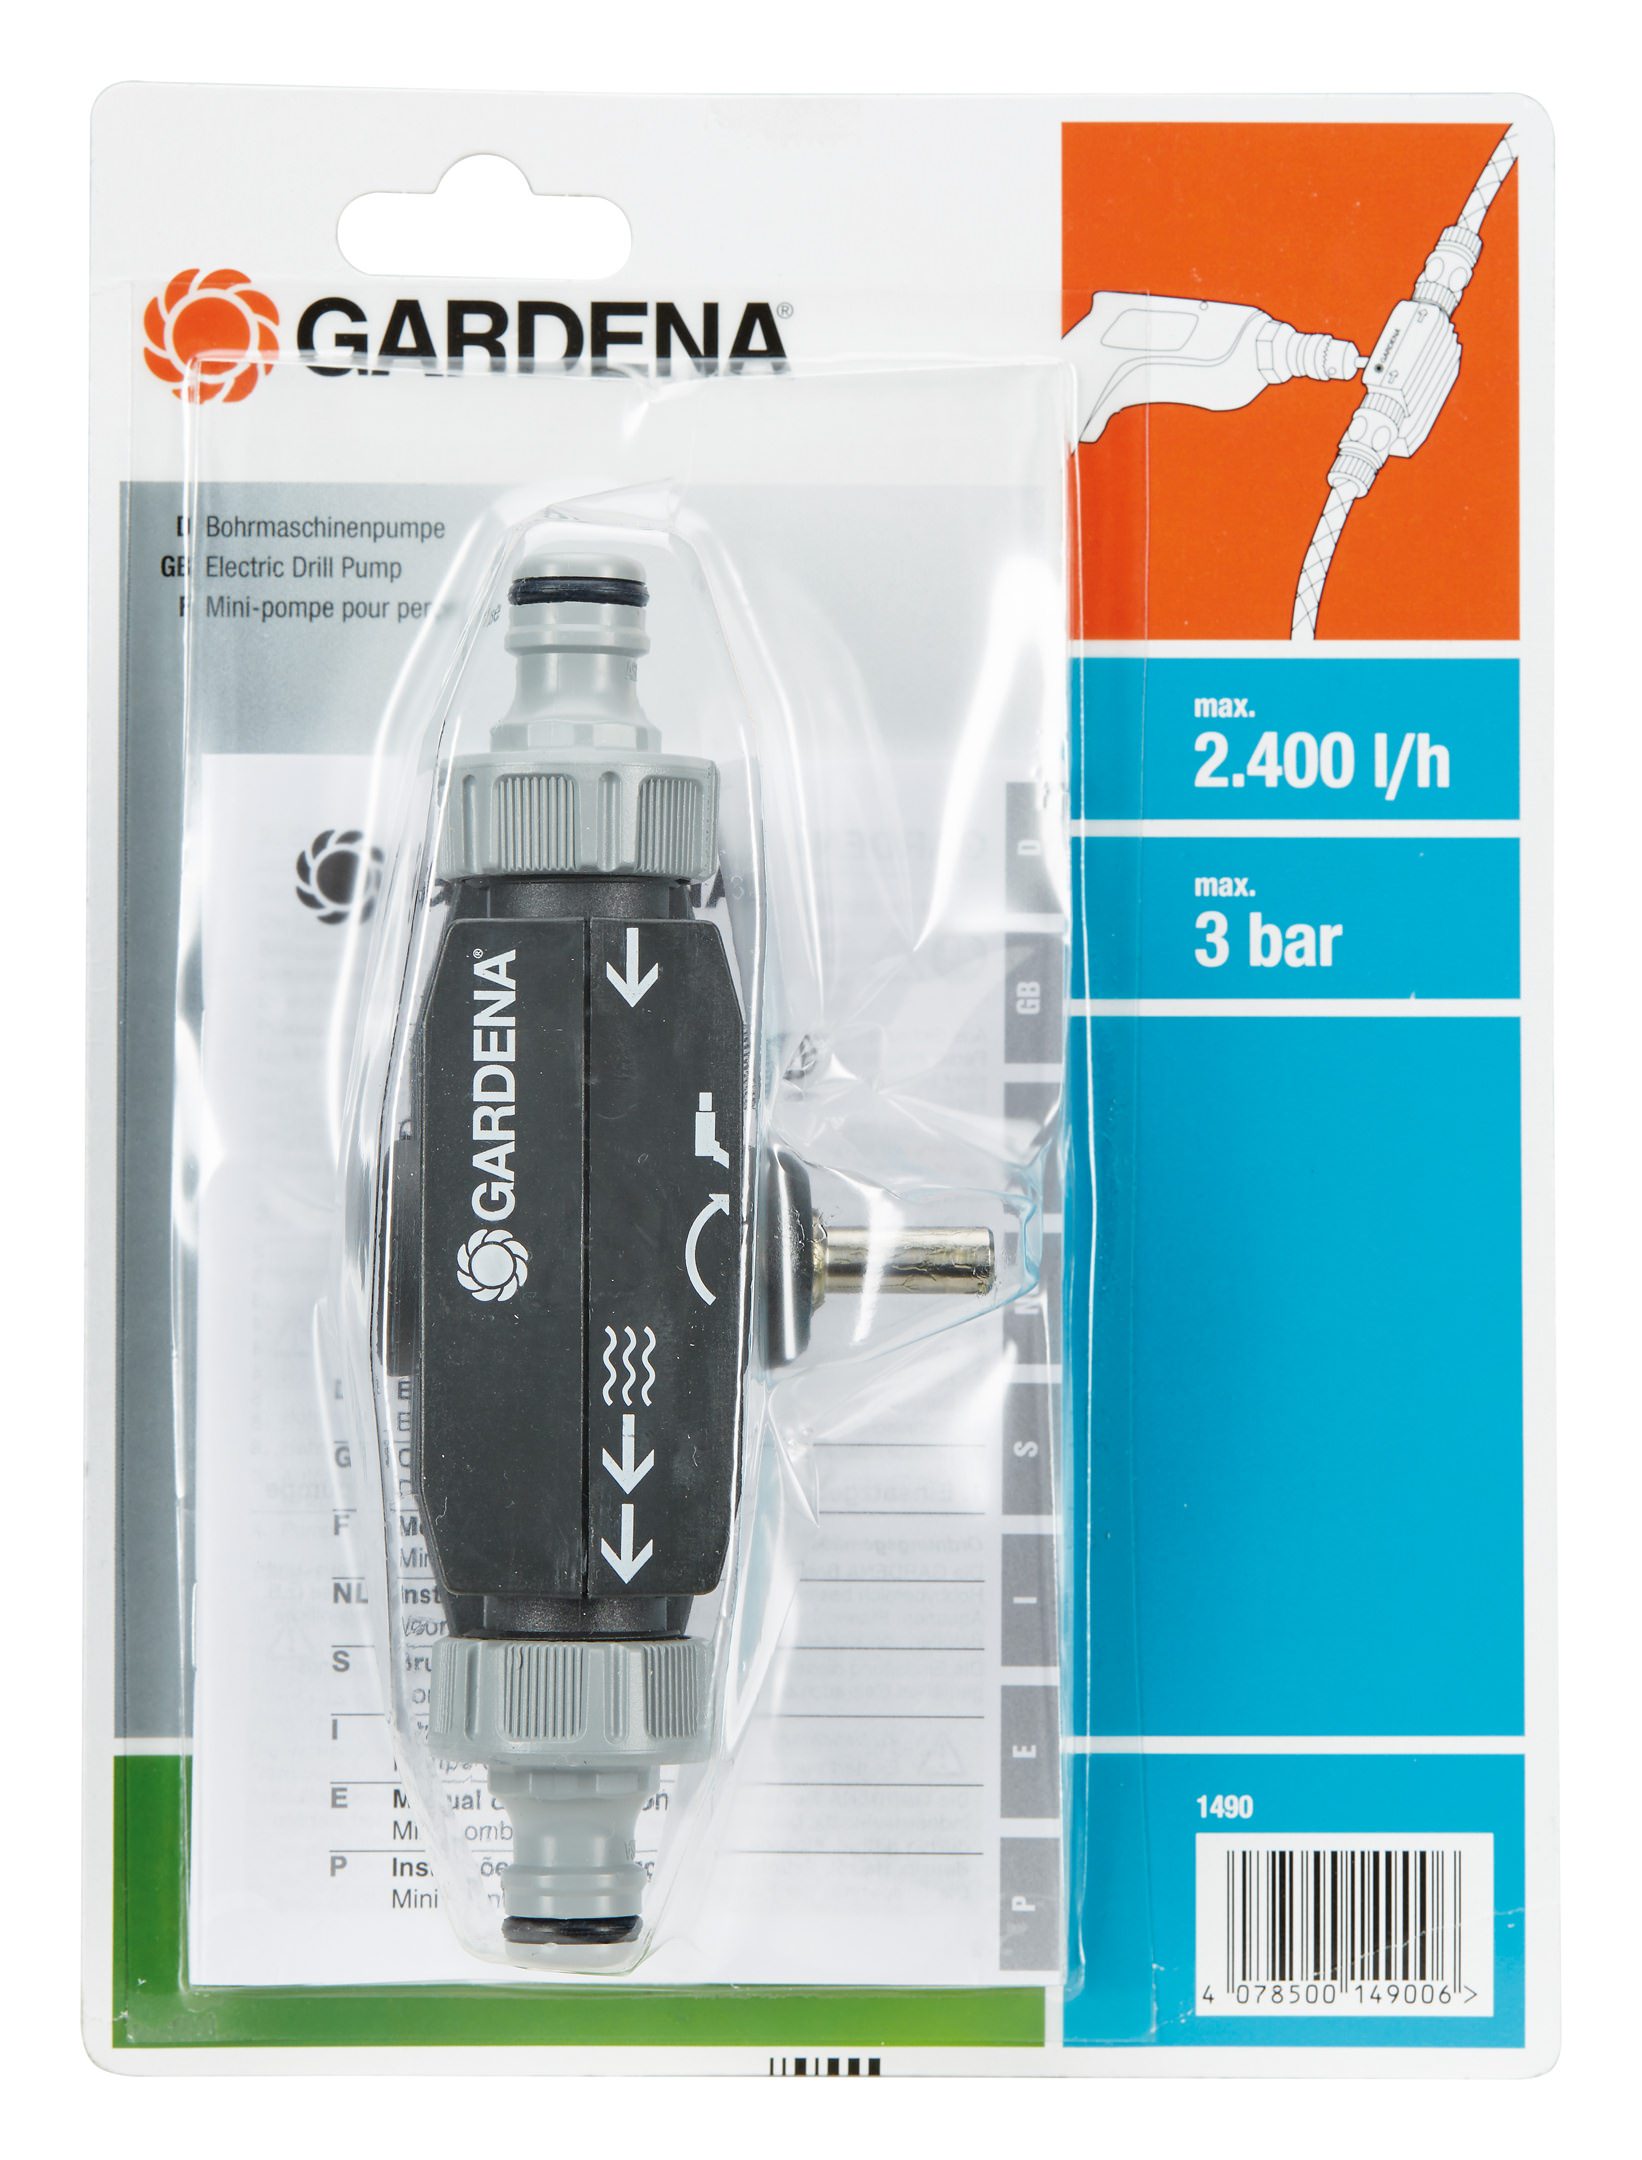 GARDENA Bohrmaschinenpumpe 01490-20 günstig online kaufen